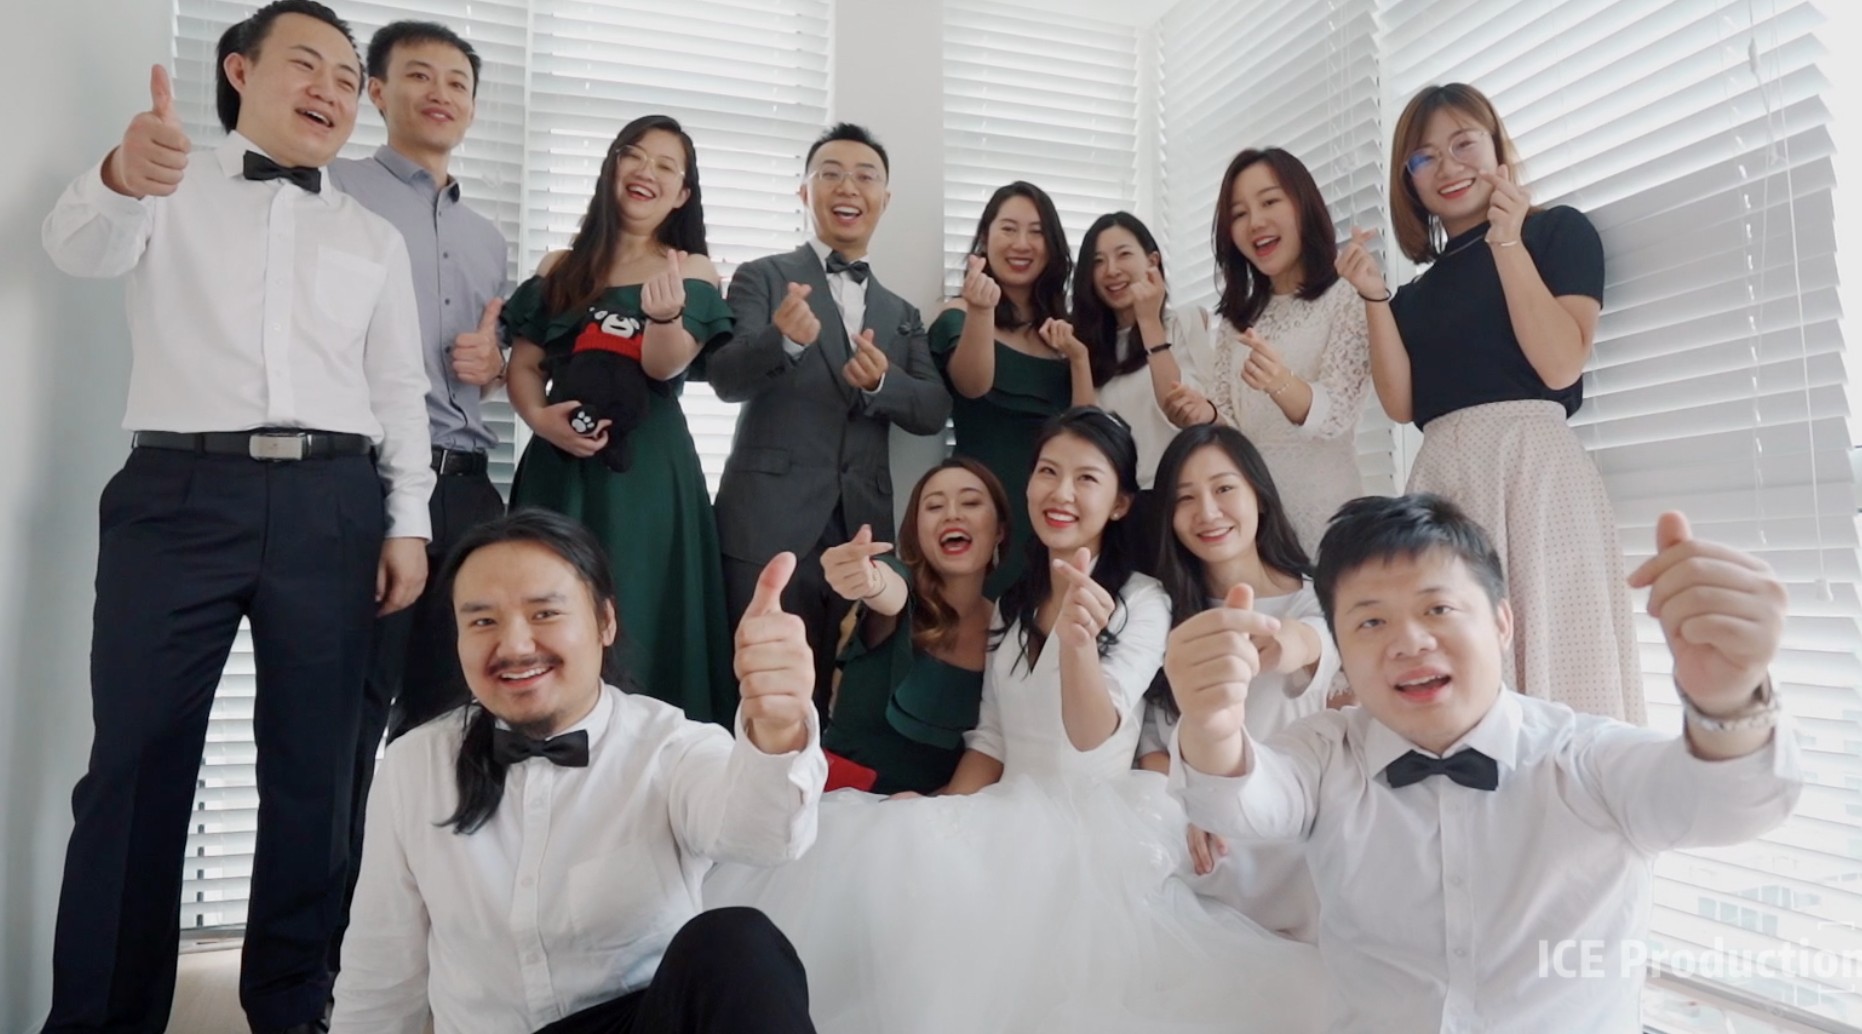 国内婚礼 · 2019年-北京婚礼-三机位 - 「ICE Production」 